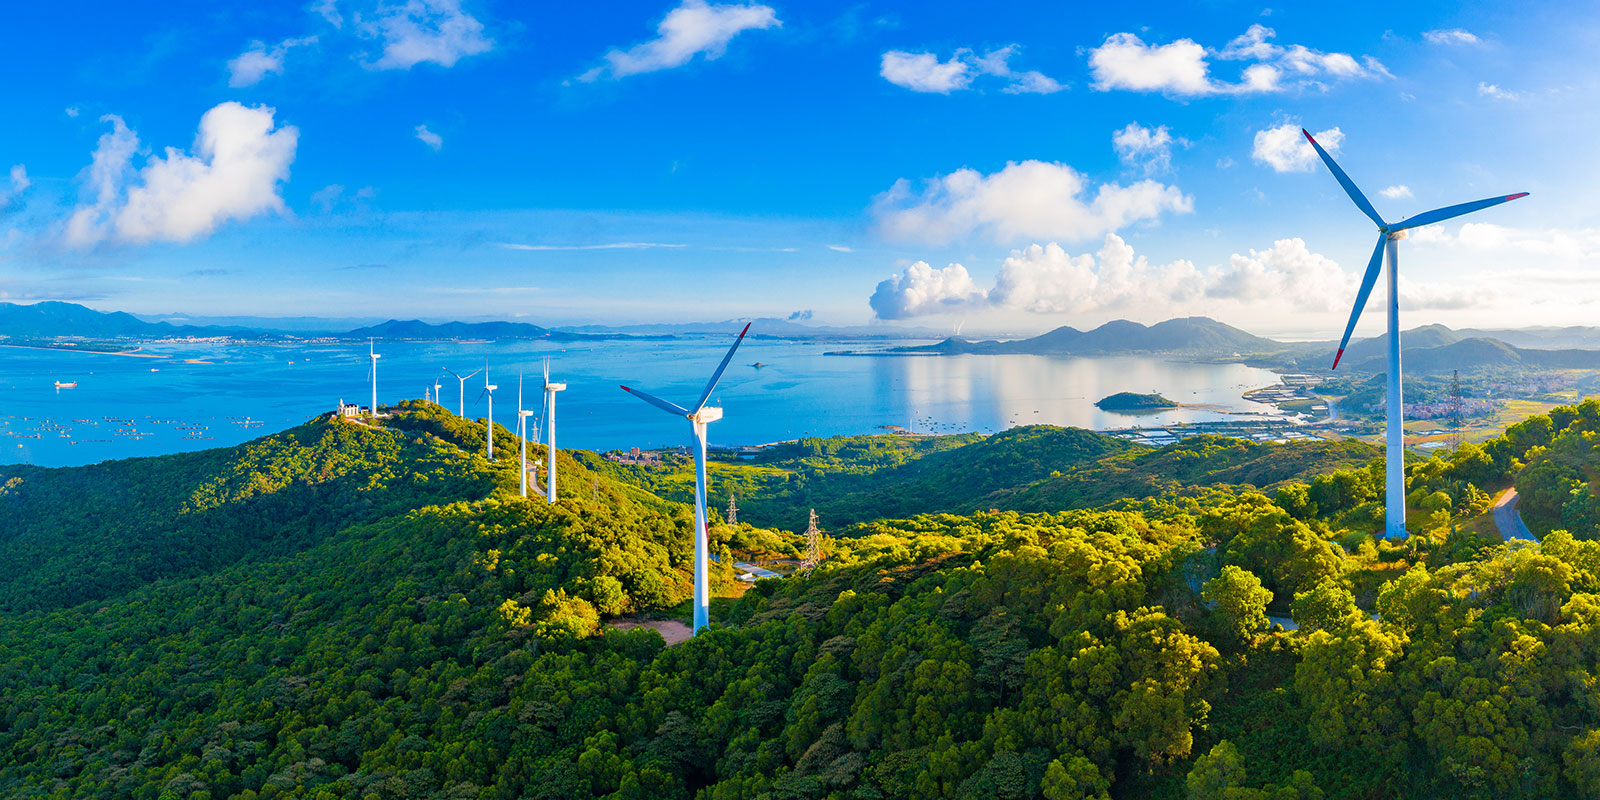 Grande moinho de vento na ilha de Hailing, cidade de Yangjiang, província de Guangdong, China